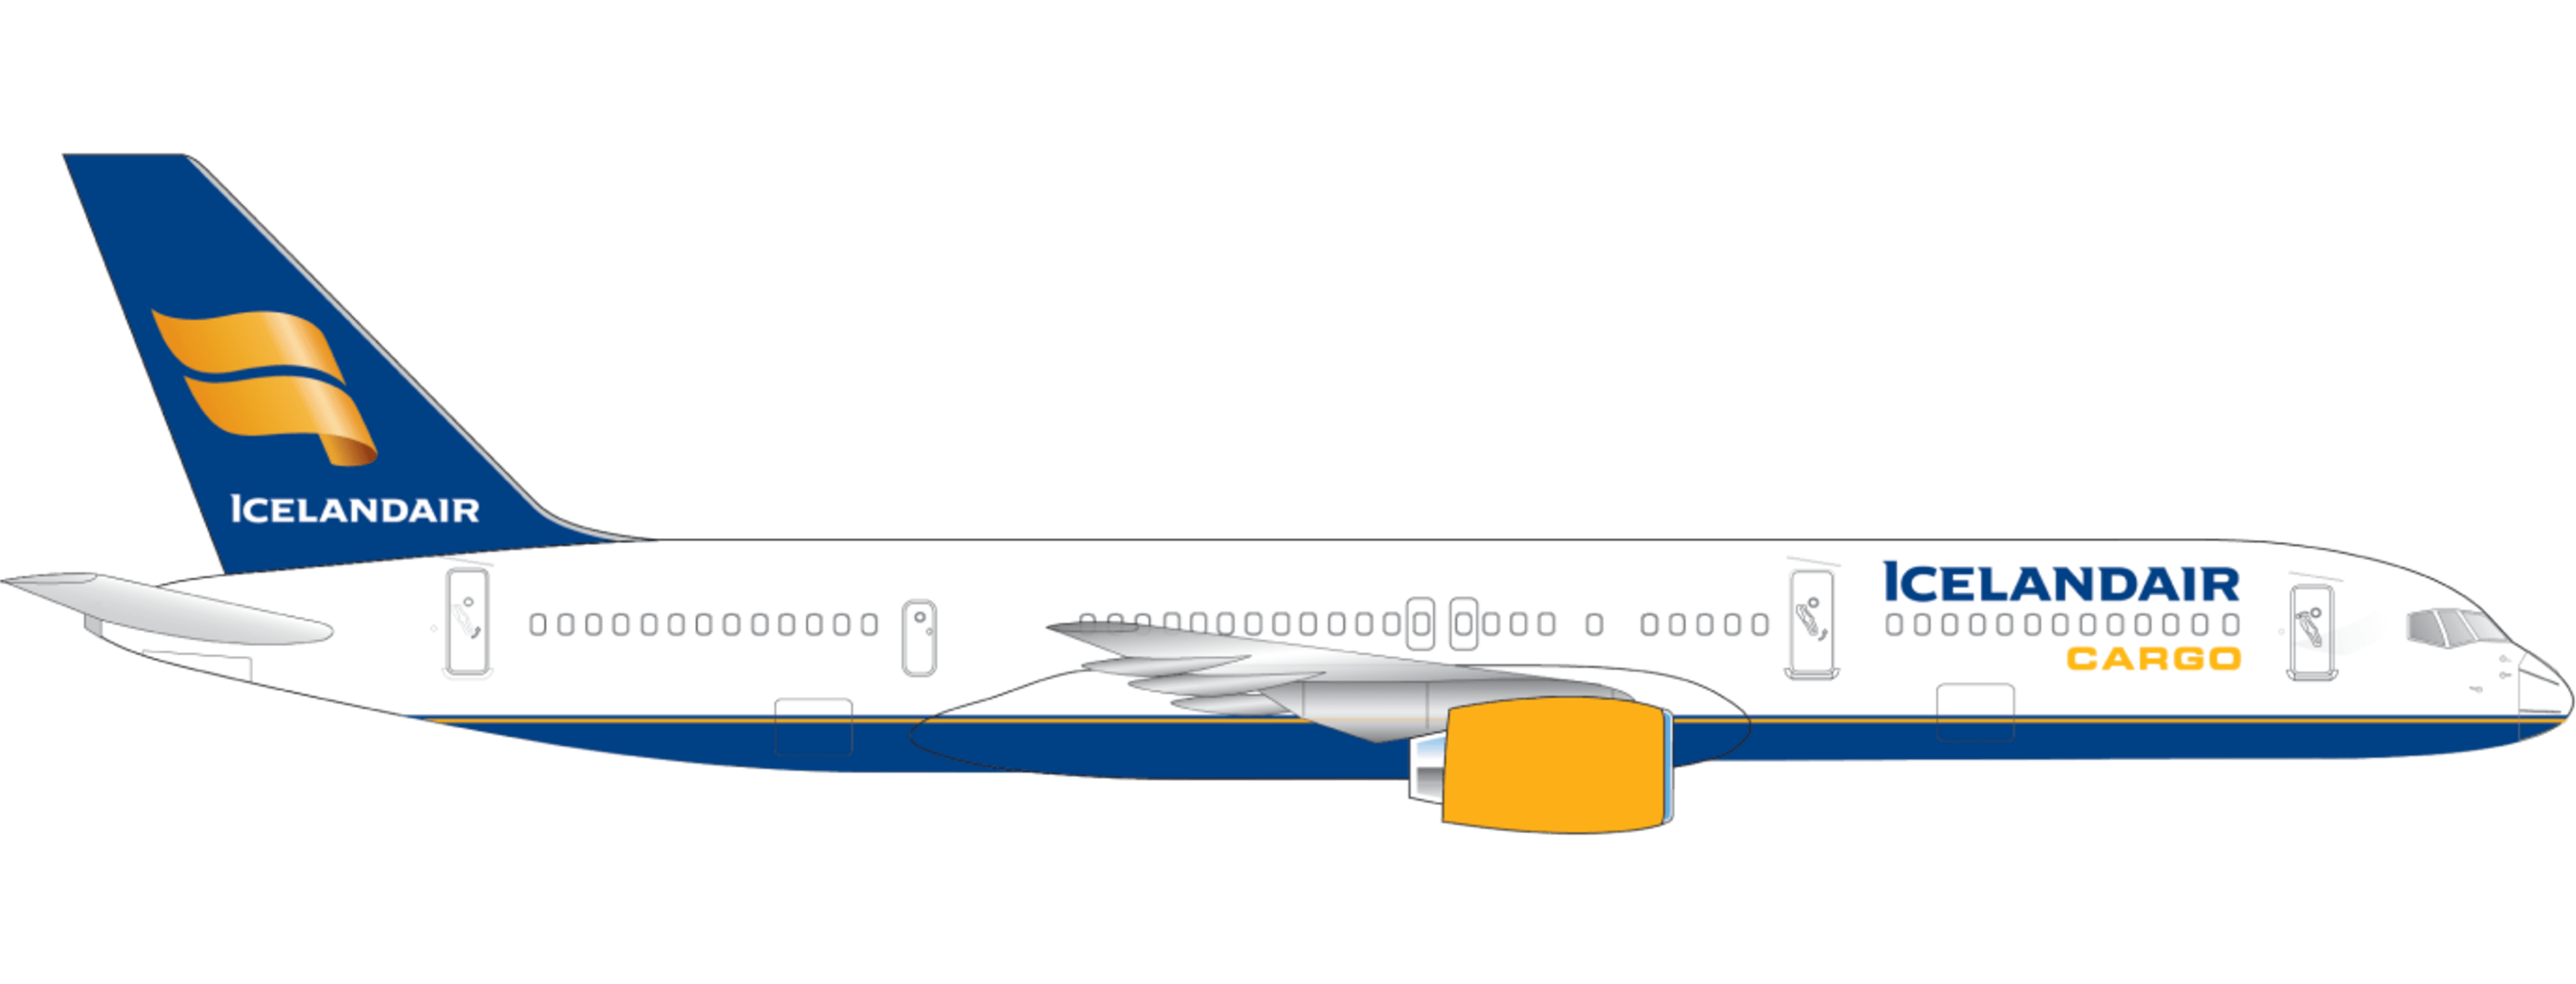 Boeing 757 Cargo